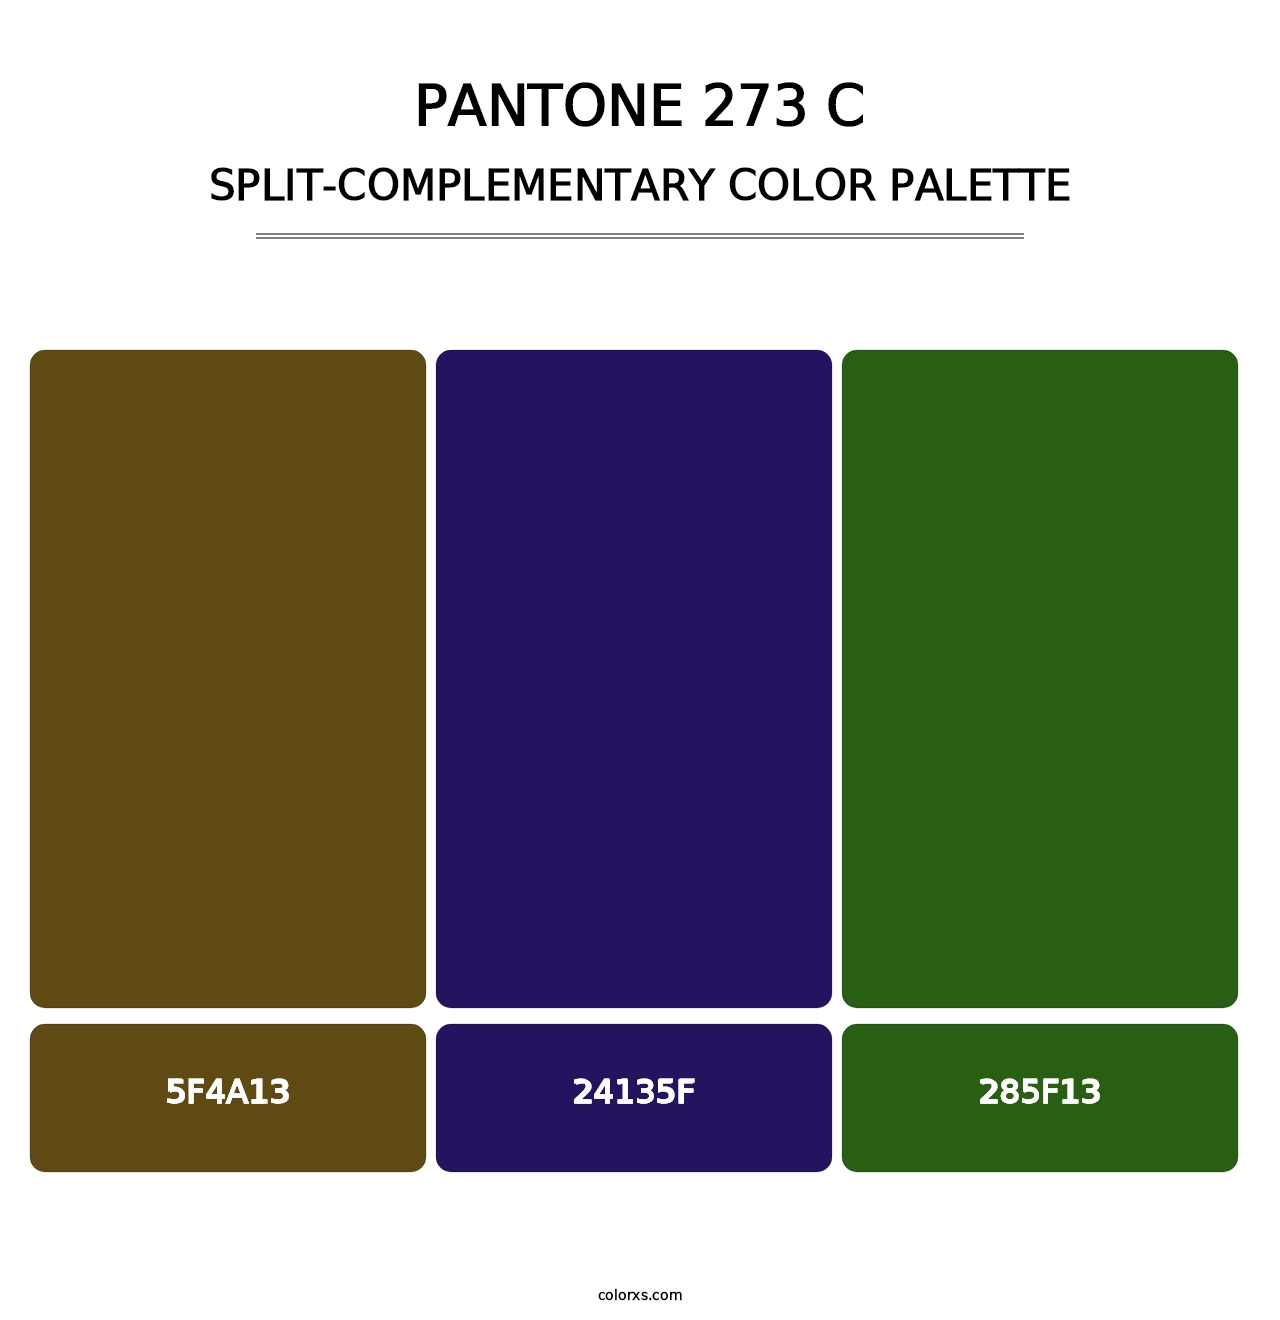 PANTONE 273 C - Split-Complementary Color Palette